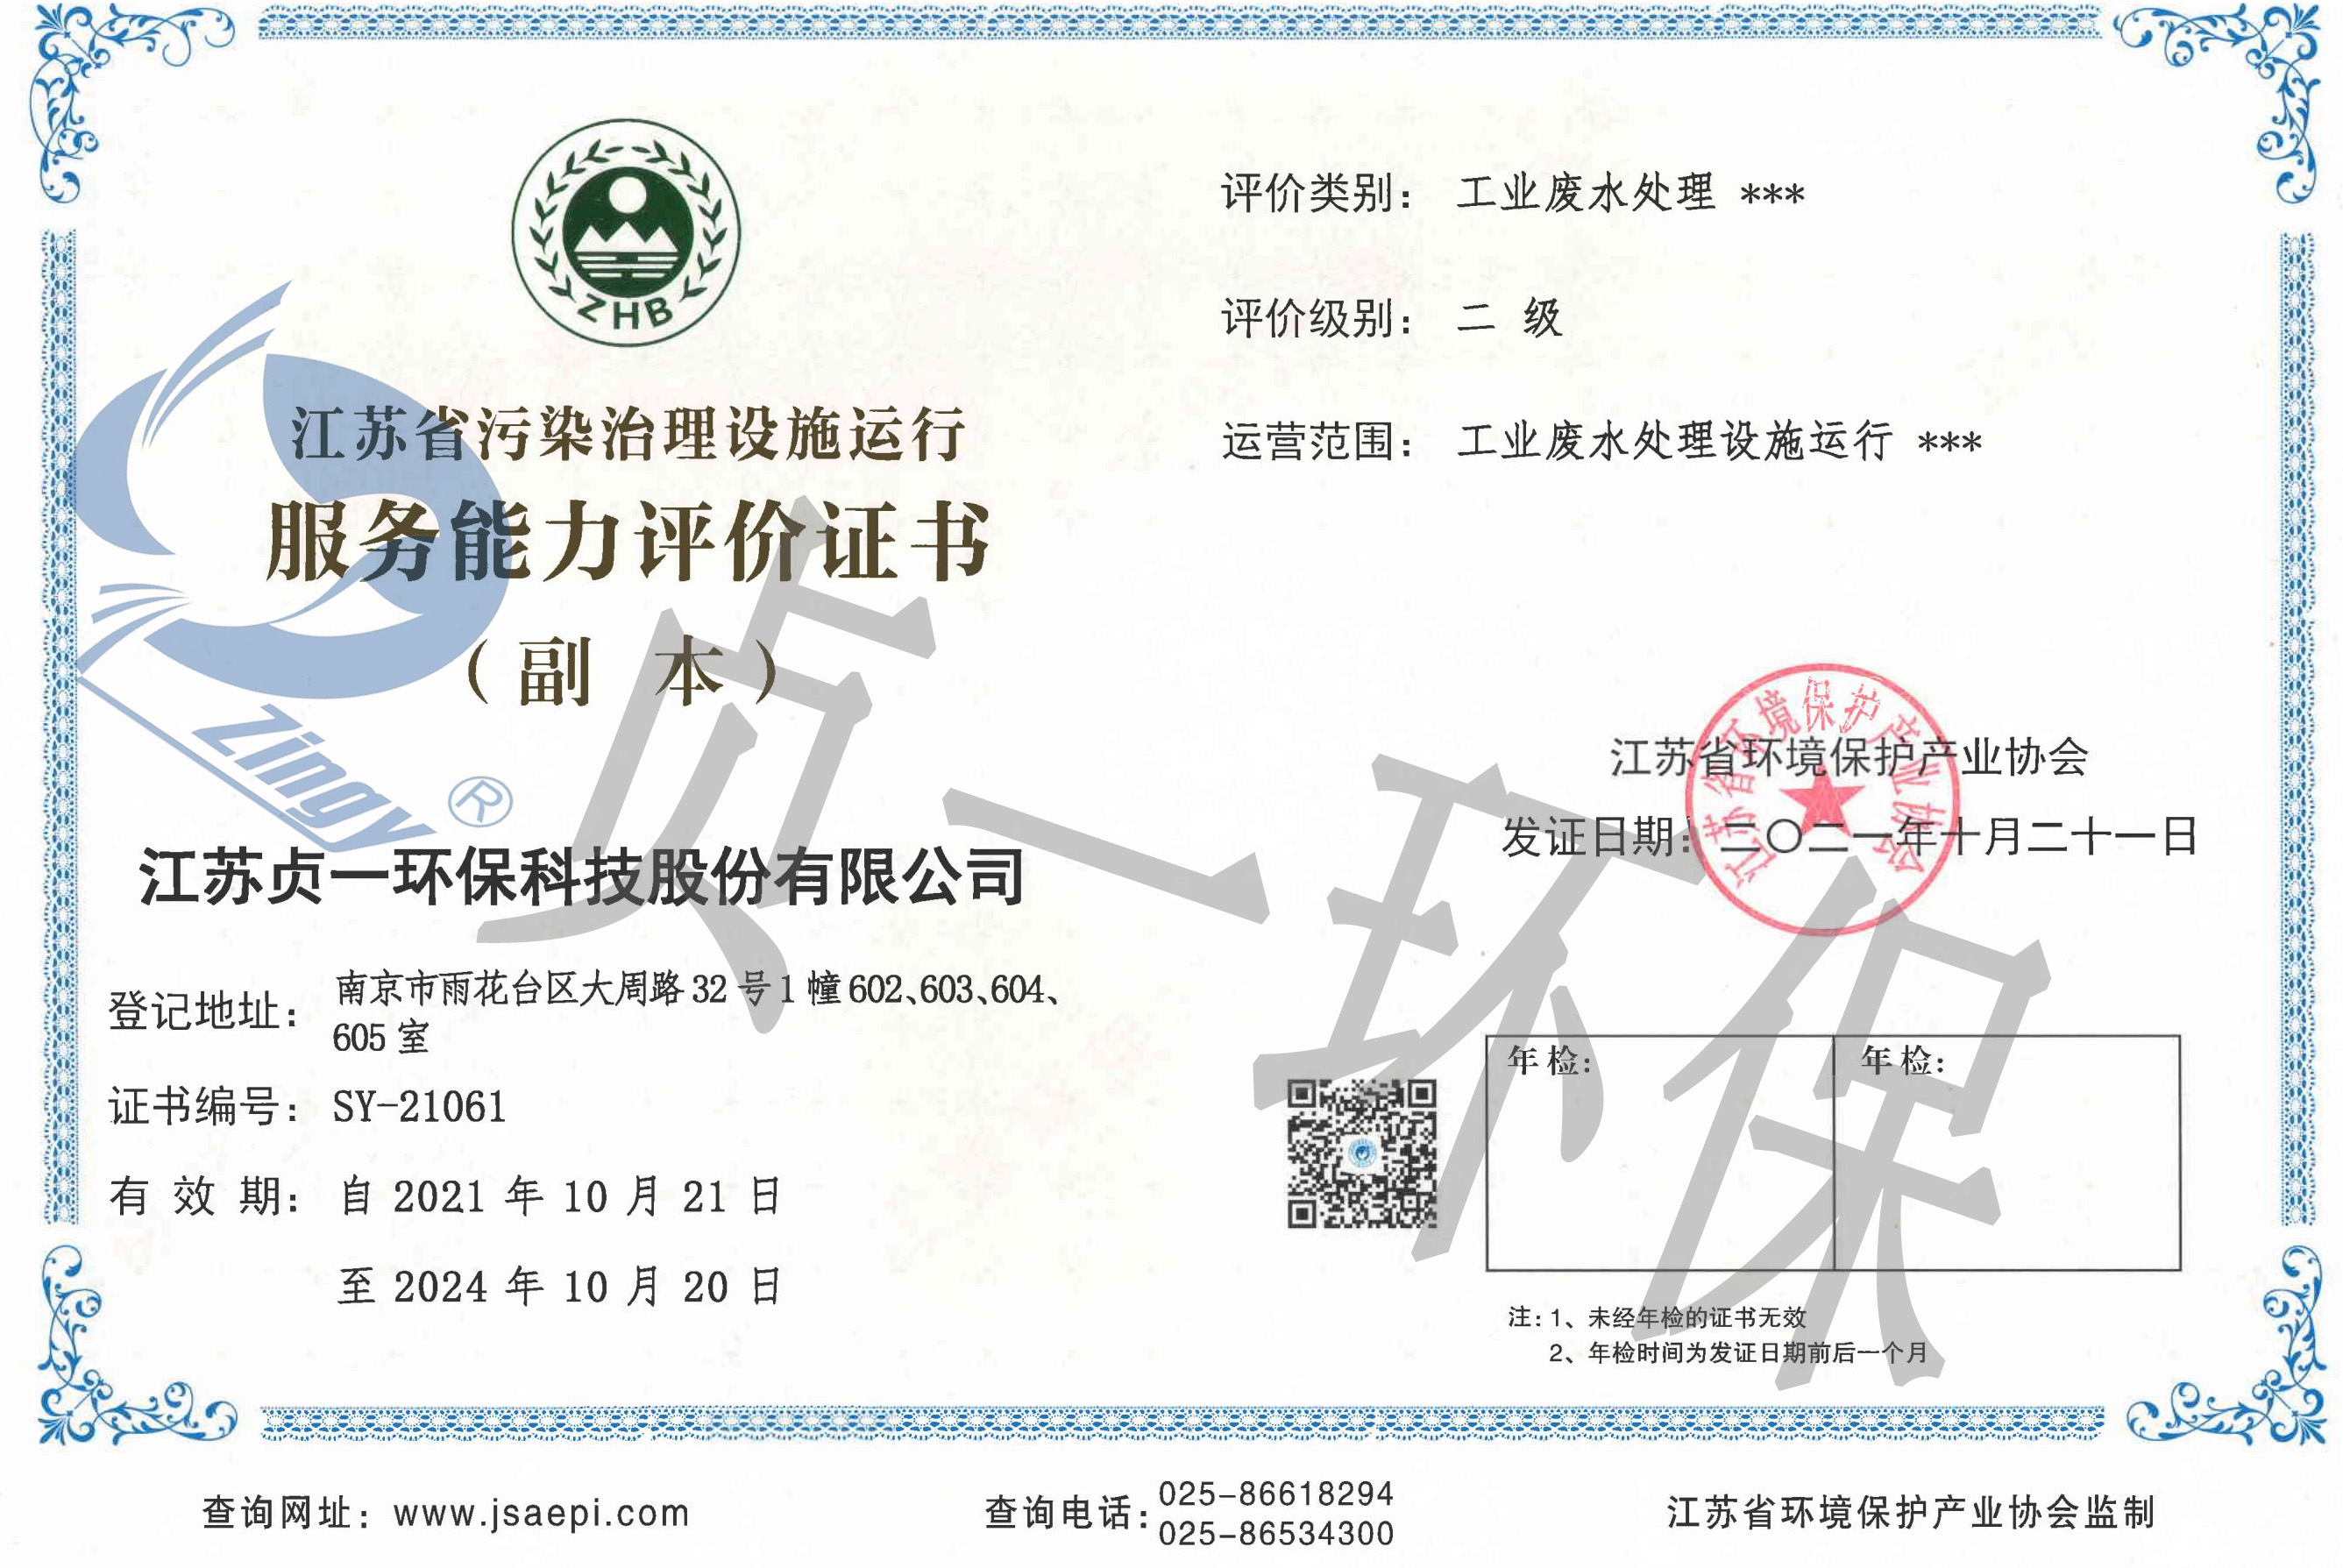 江苏省污染治理设施运行服务能力评价证书 